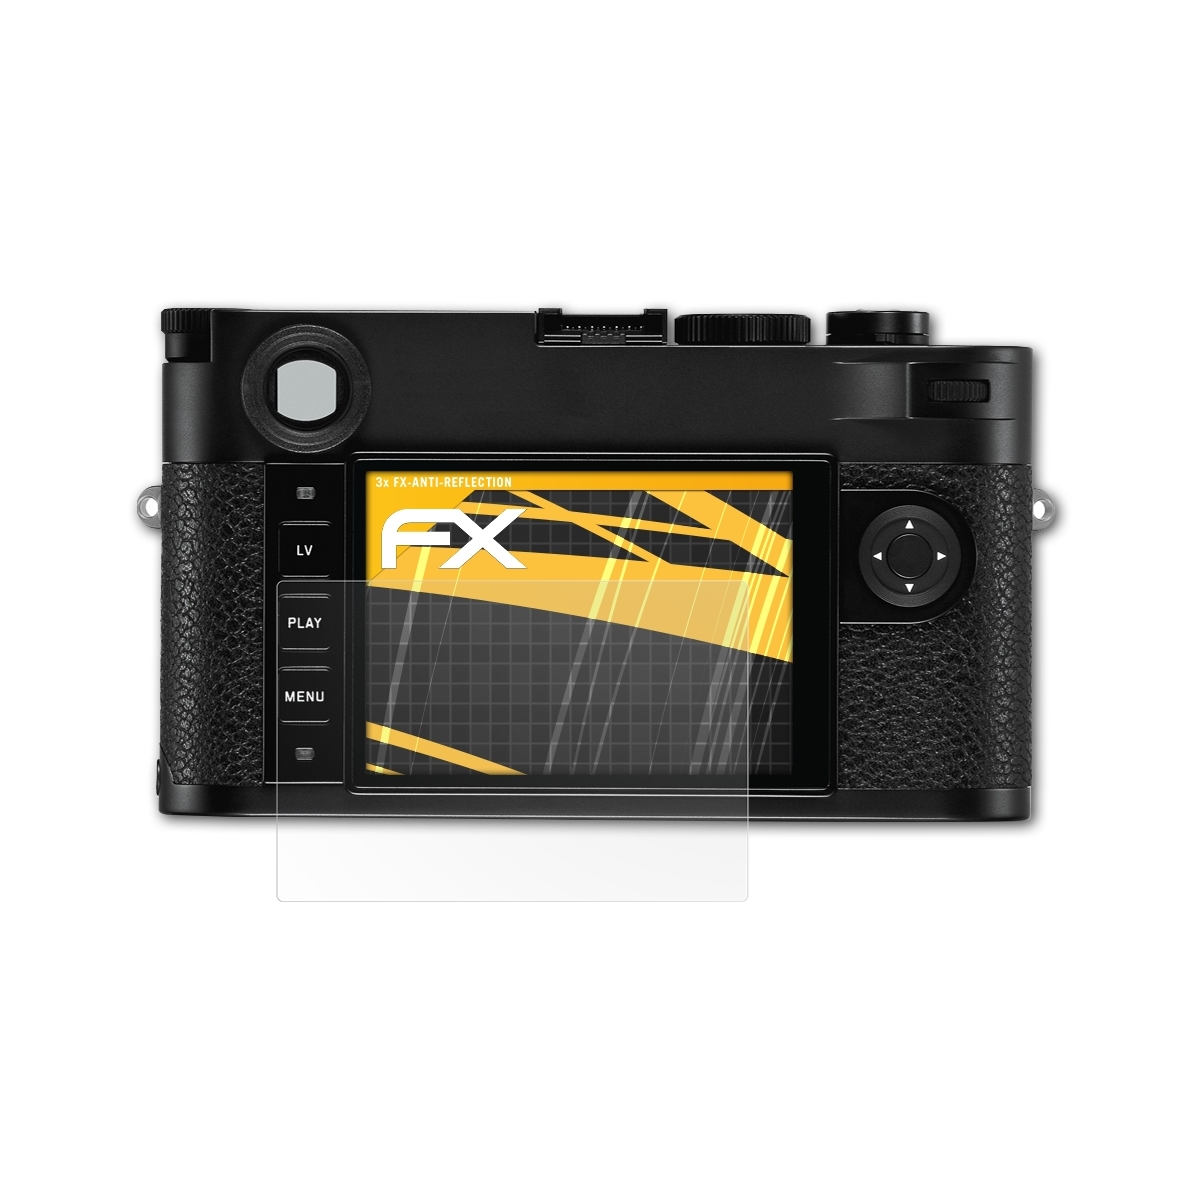 ATFOLIX 3x FX-Antireflex Displayschutz(für M10) Leica